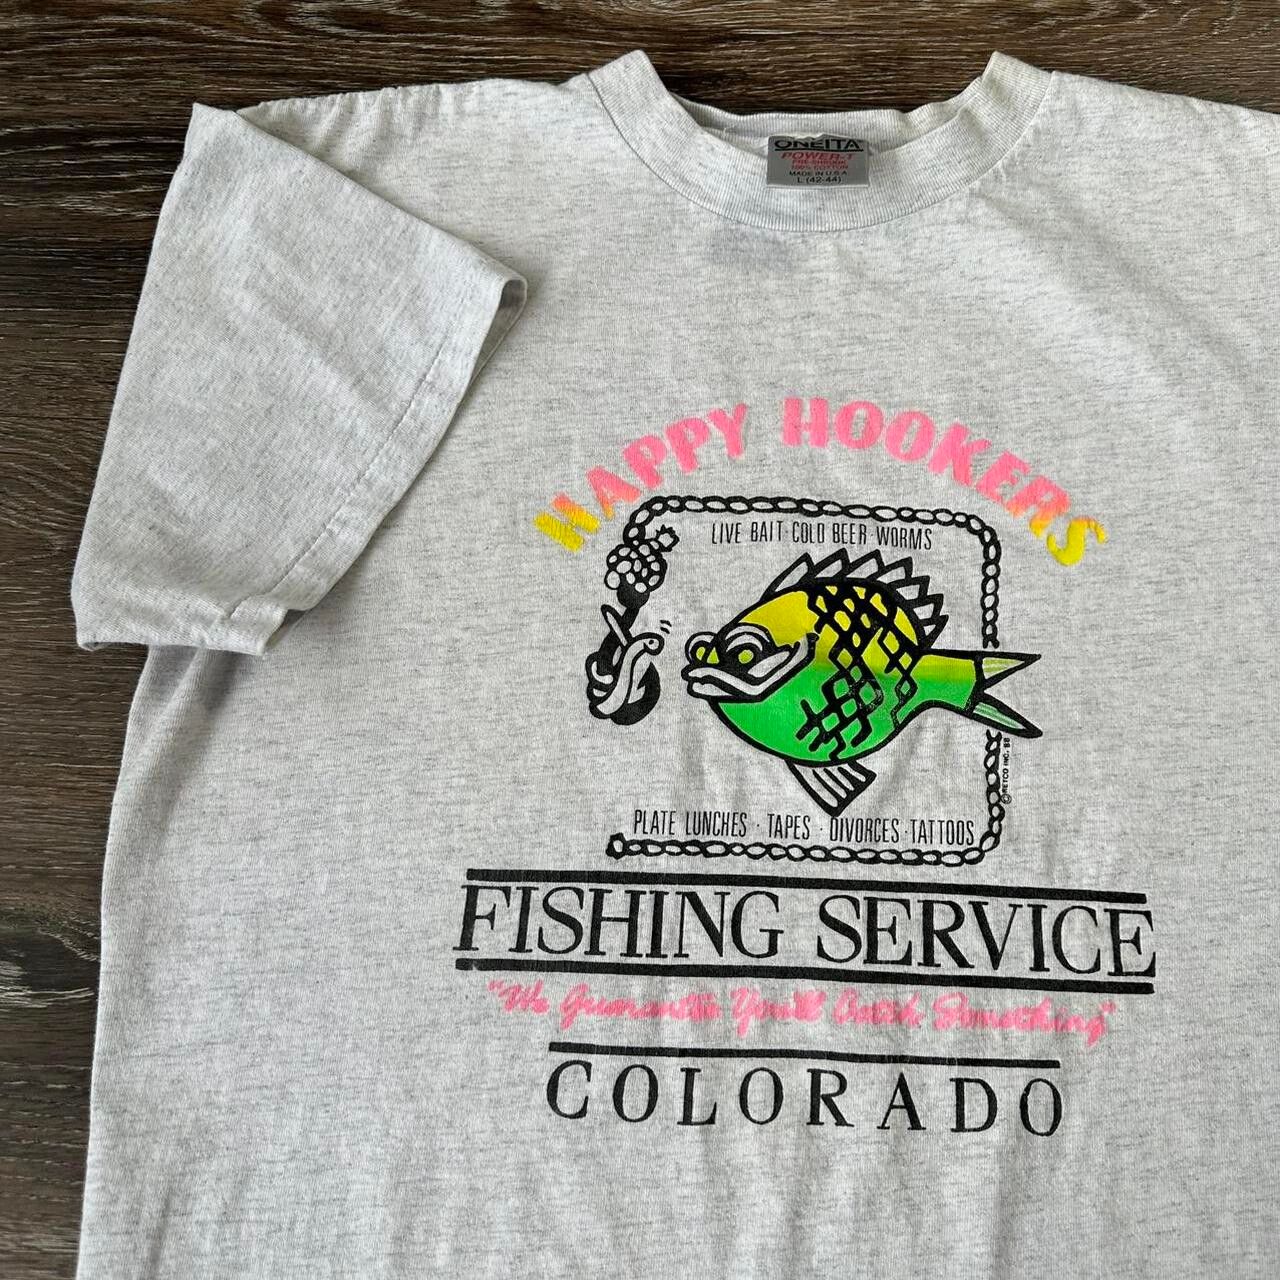 Fishing Tshirt Design Vintage Fishing Tshirt Stock Vector (Royalty Free)  2298668251